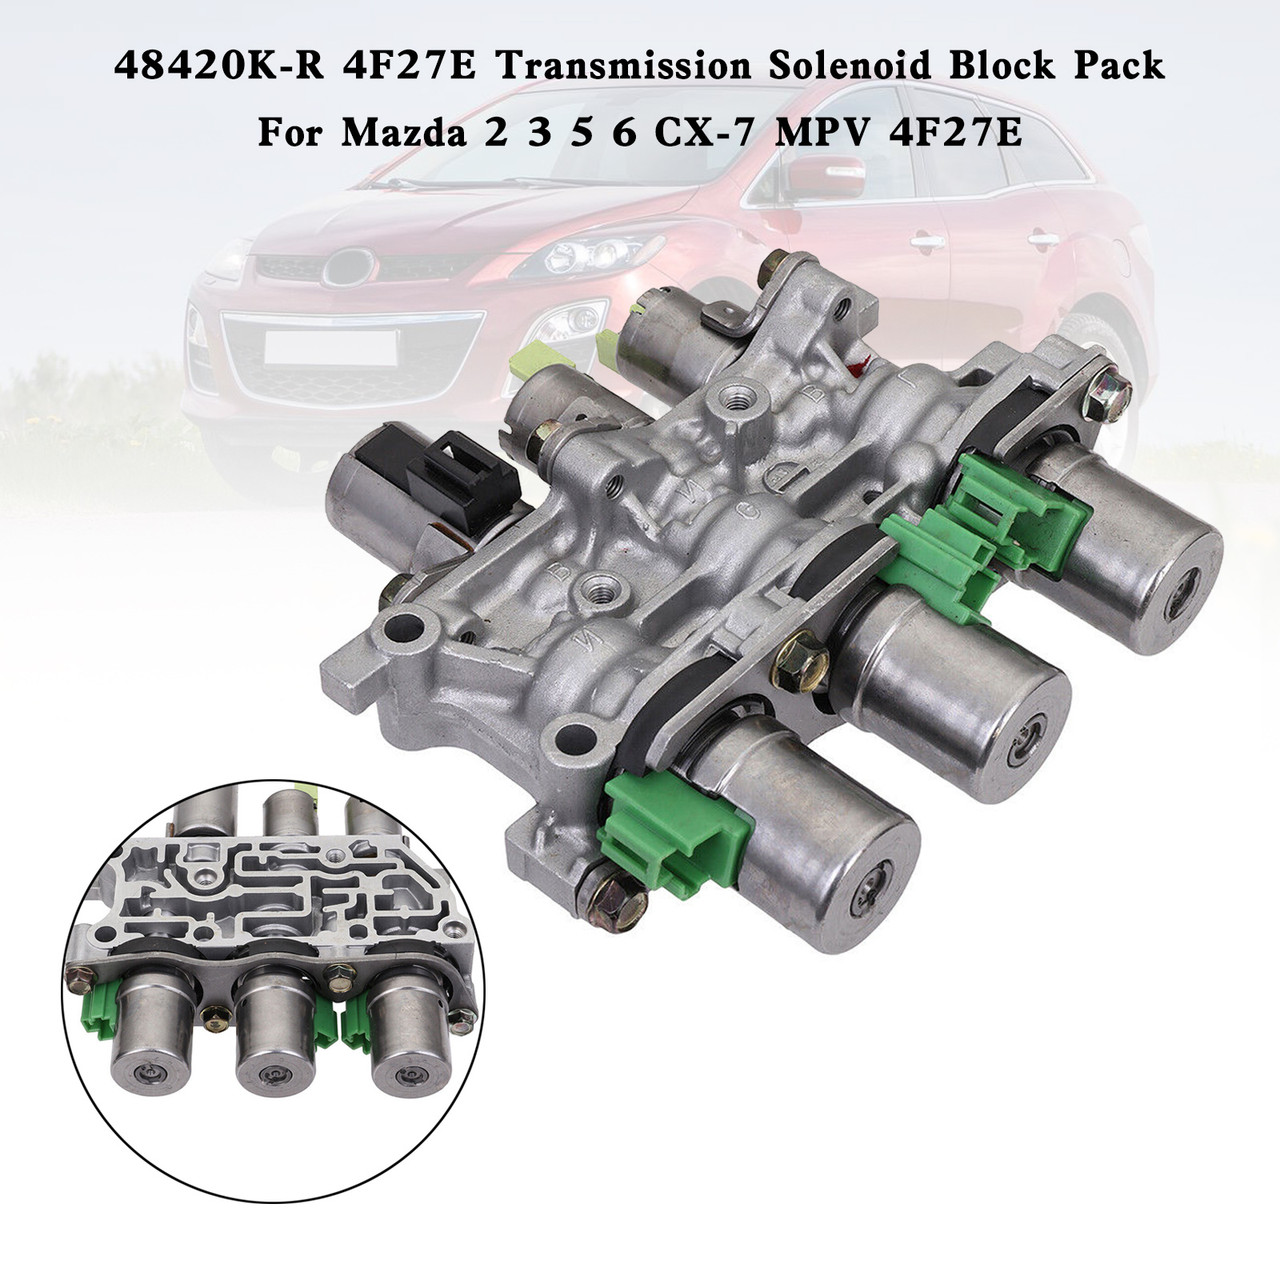 48420K-R 4F27E Transmission Solenoid Block Pack For Mazda 2 3 5 6 CX-7 MPV 4F27E